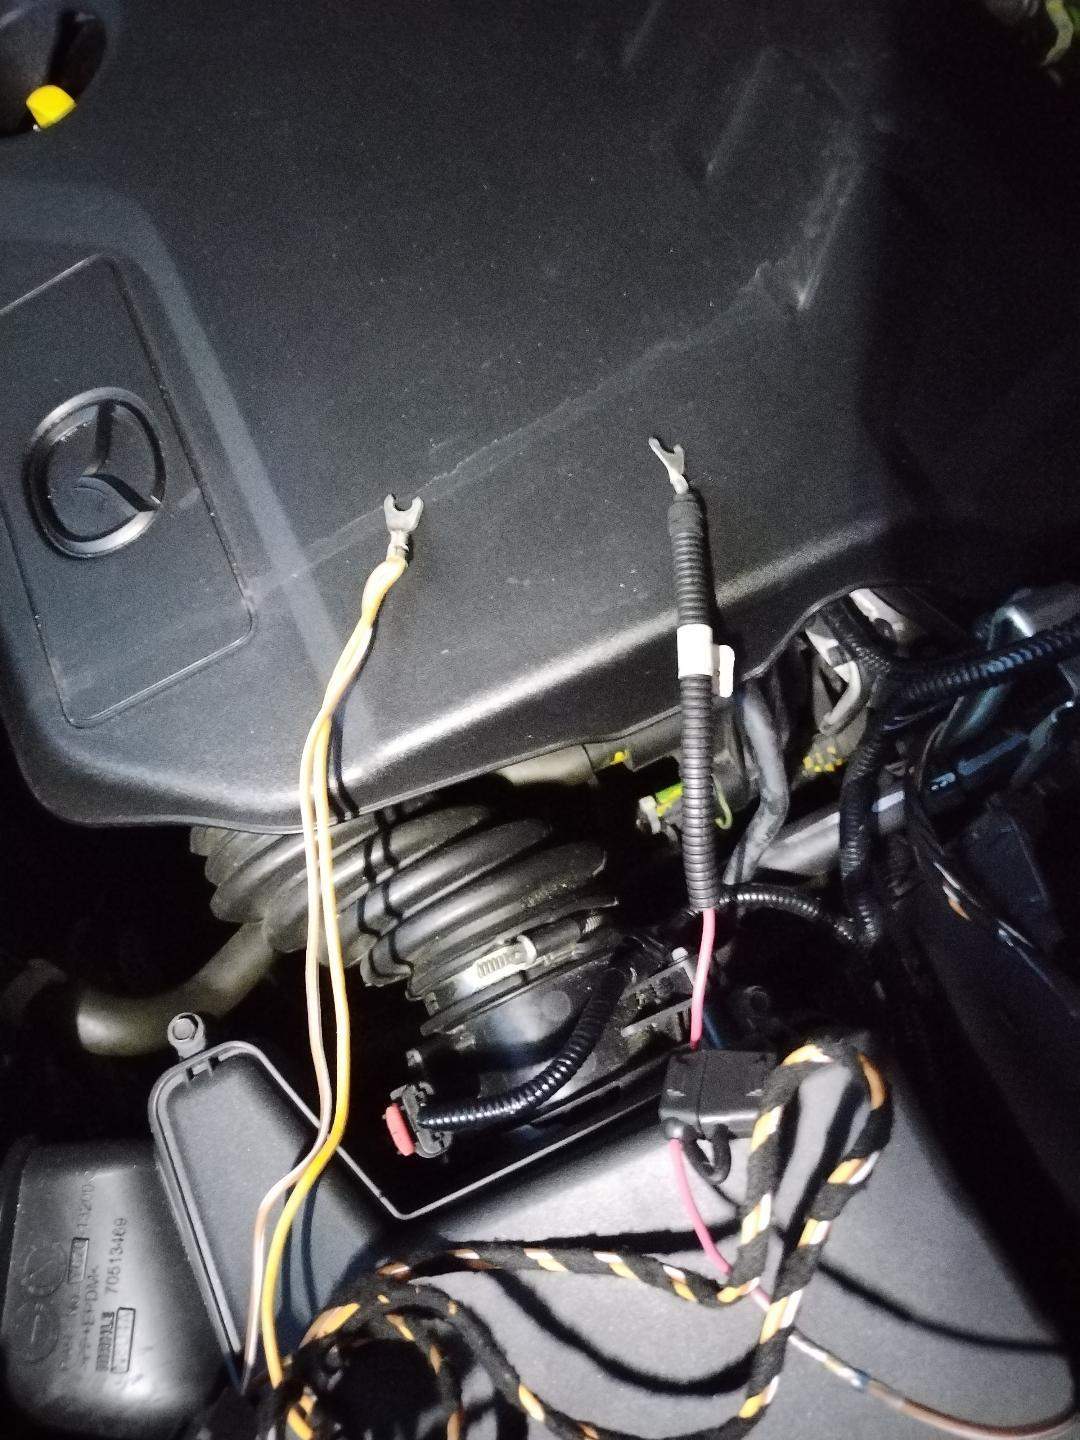 Wo werden diese Kabel der Anhängerkupplung im Motorraum angeschlossen?  (Elektrik, Elektriker, Kfz-Mechatroniker)